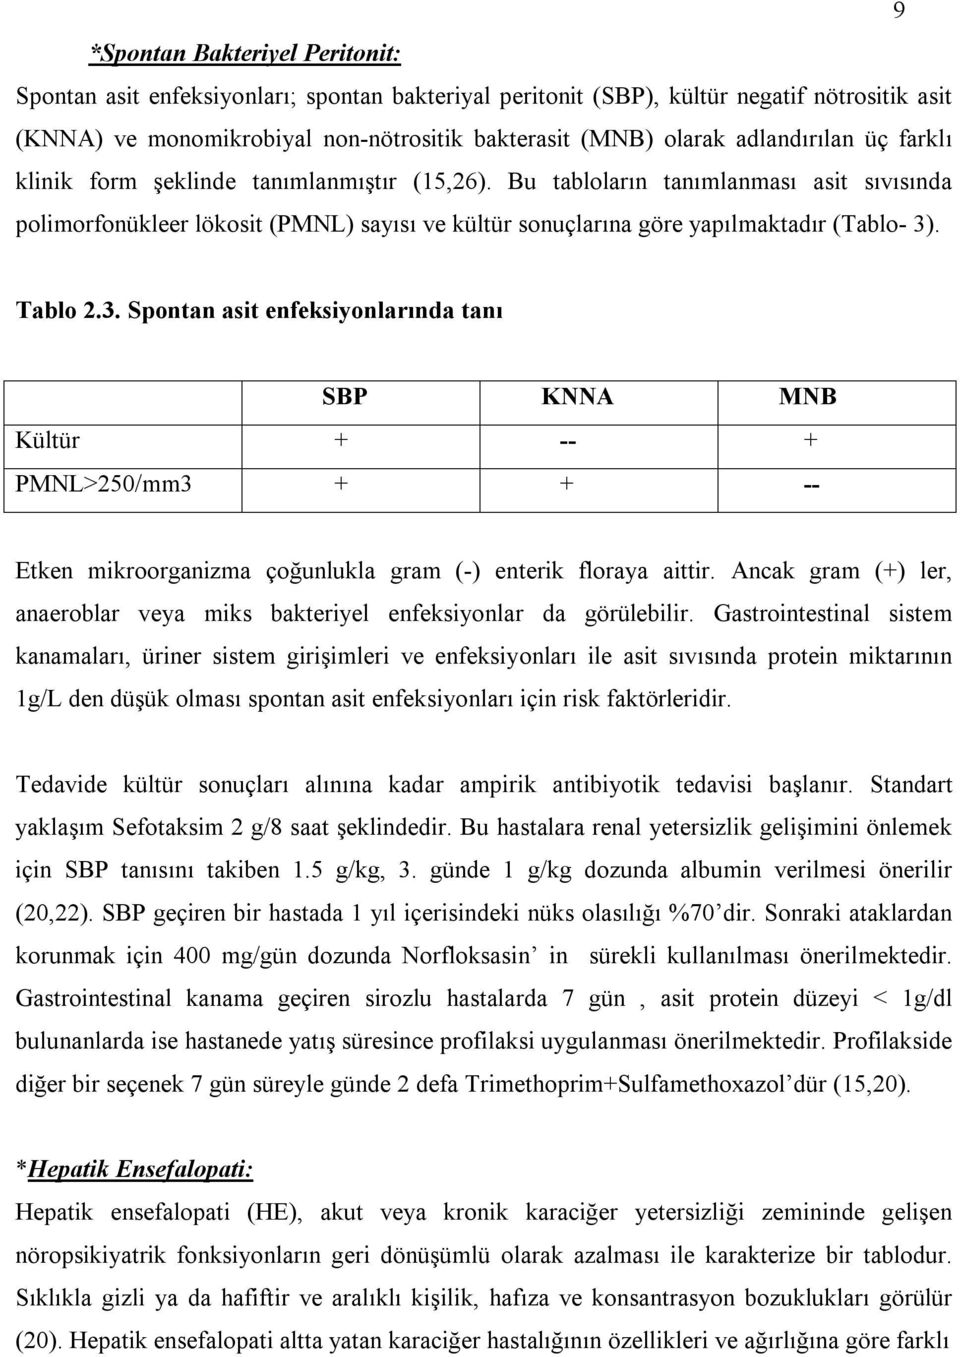 Bu tabloların tanımlanması asit sıvısında polimorfonükleer lökosit (PMNL) sayısı ve kültür sonuçlarına göre yapılmaktadır (Tablo- 3)